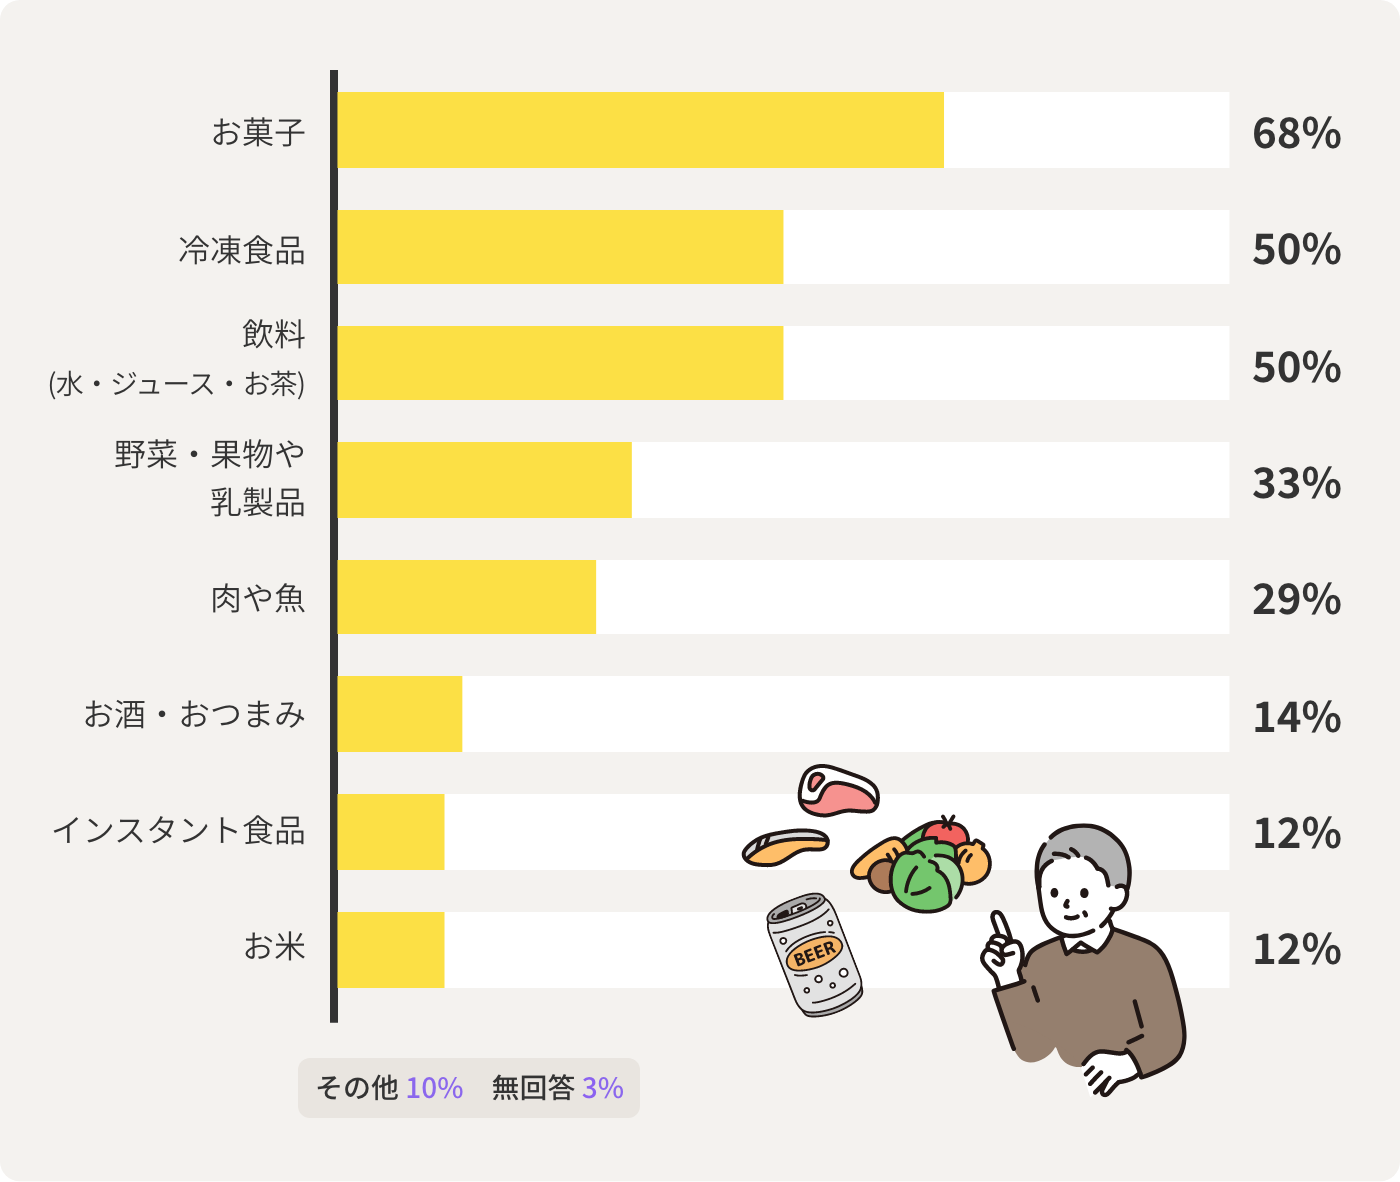 お菓⼦68% 冷凍⾷品50% 飲料 (⽔・ジュース・お茶)50%